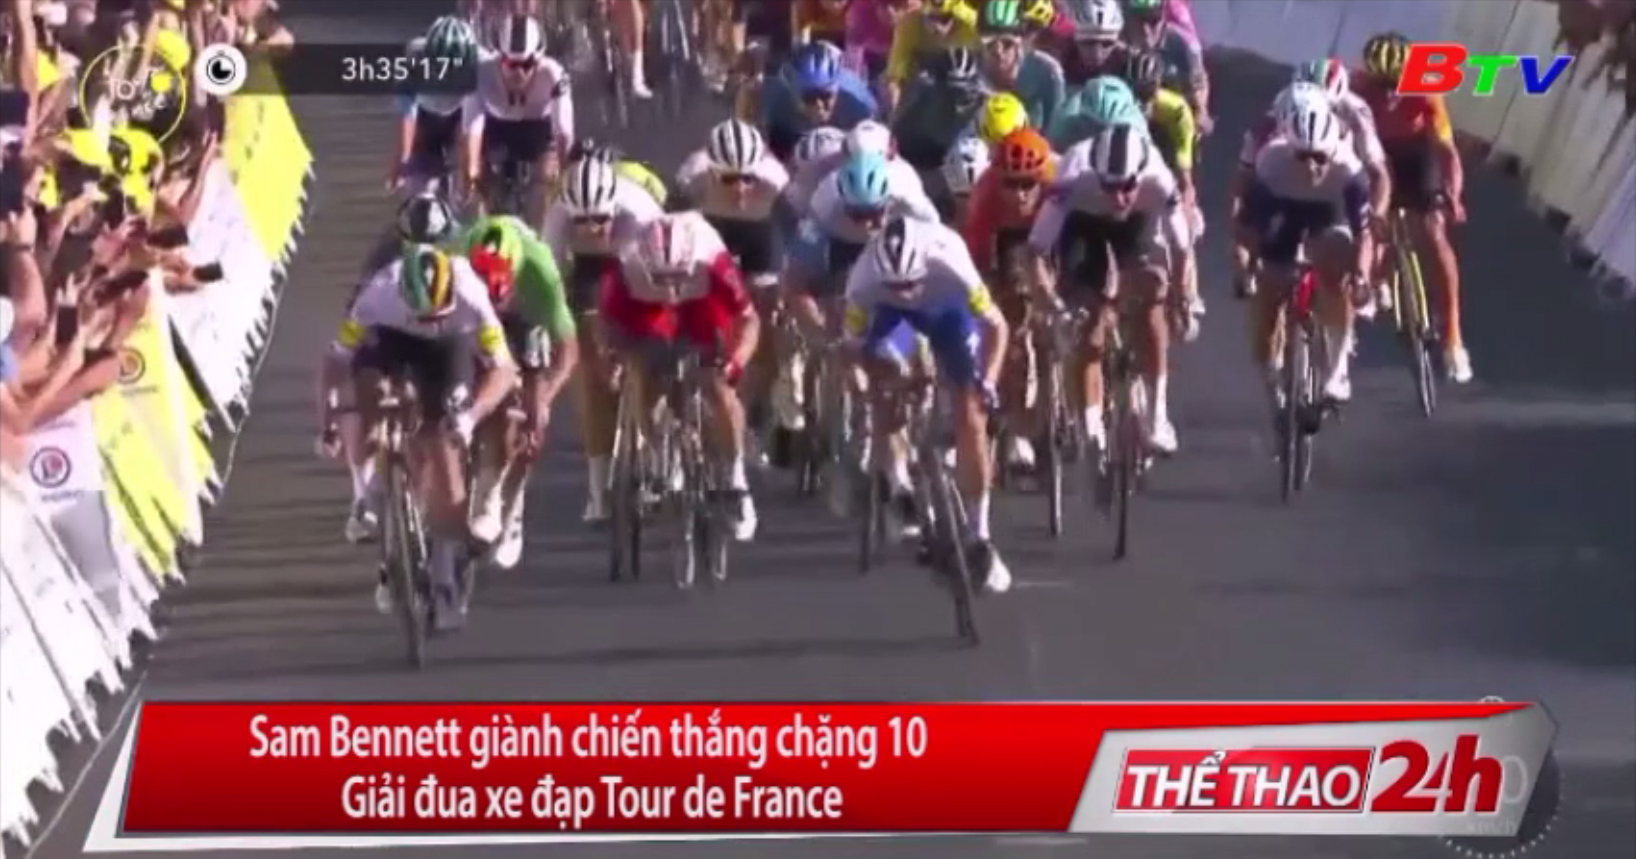 Sam Bennett giành chiến thắng Chặng 10 Giải đua xe đạp Tour de France 2020